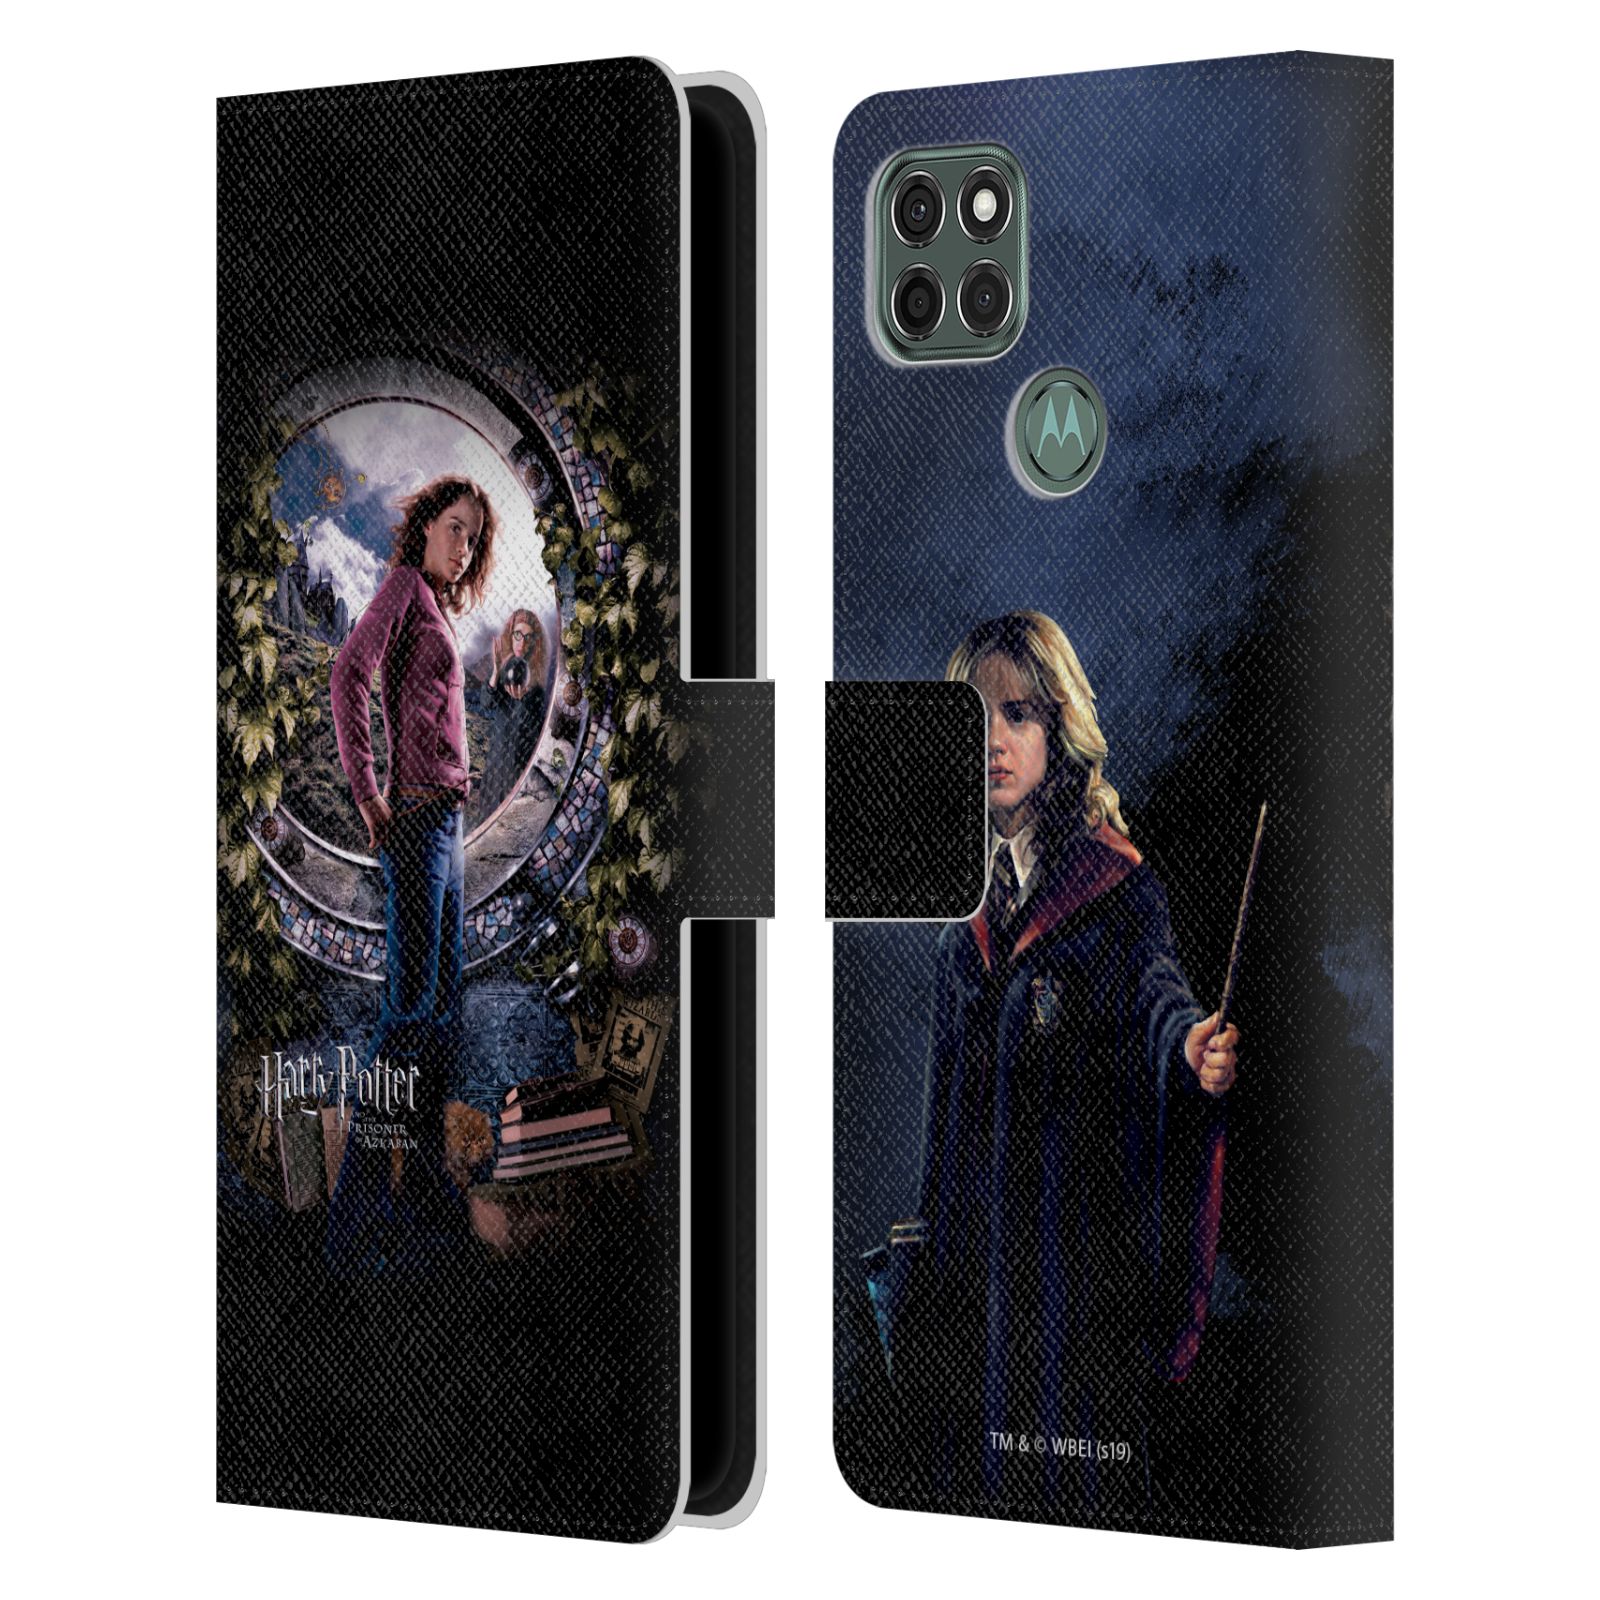 Pouzdro na mobil Motorola Moto G9 POWER - HEAD CASE - Harry Potter - Vězeň z Azkabanu - Hermiona